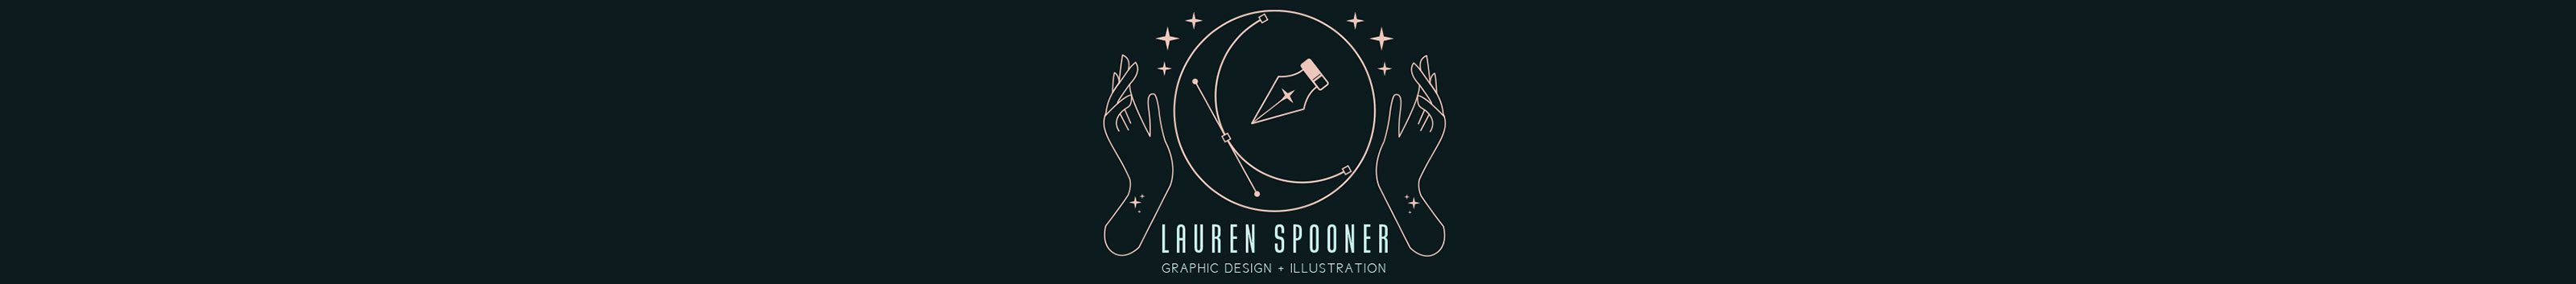 Lauren Spooner's profile banner